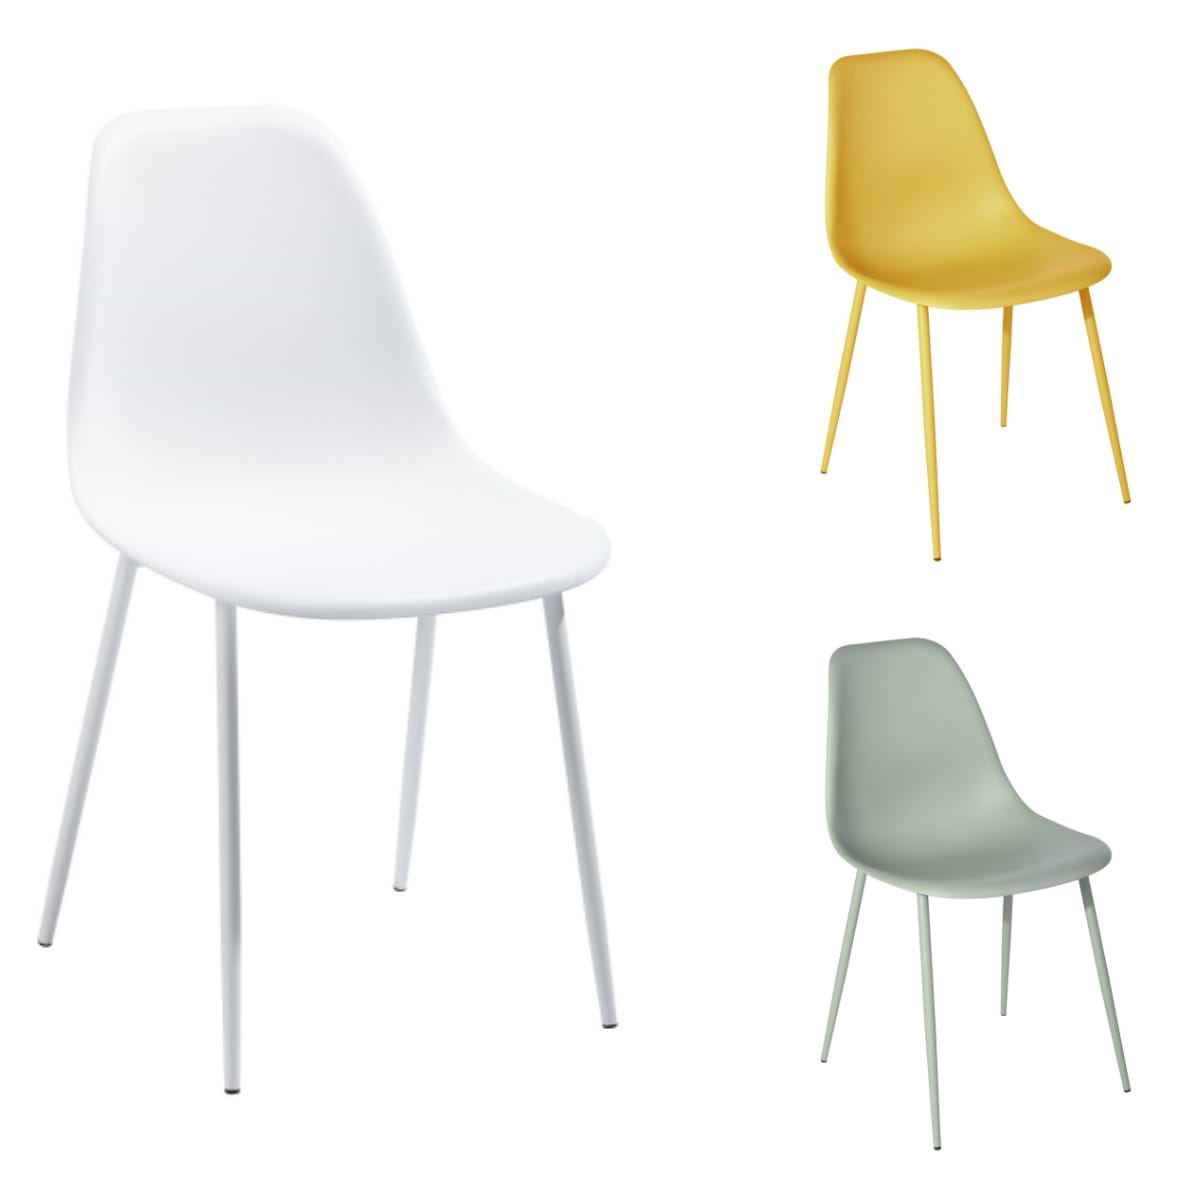 כסא רב תכליתי דגם KONWIN צבע ירוק HOMAX